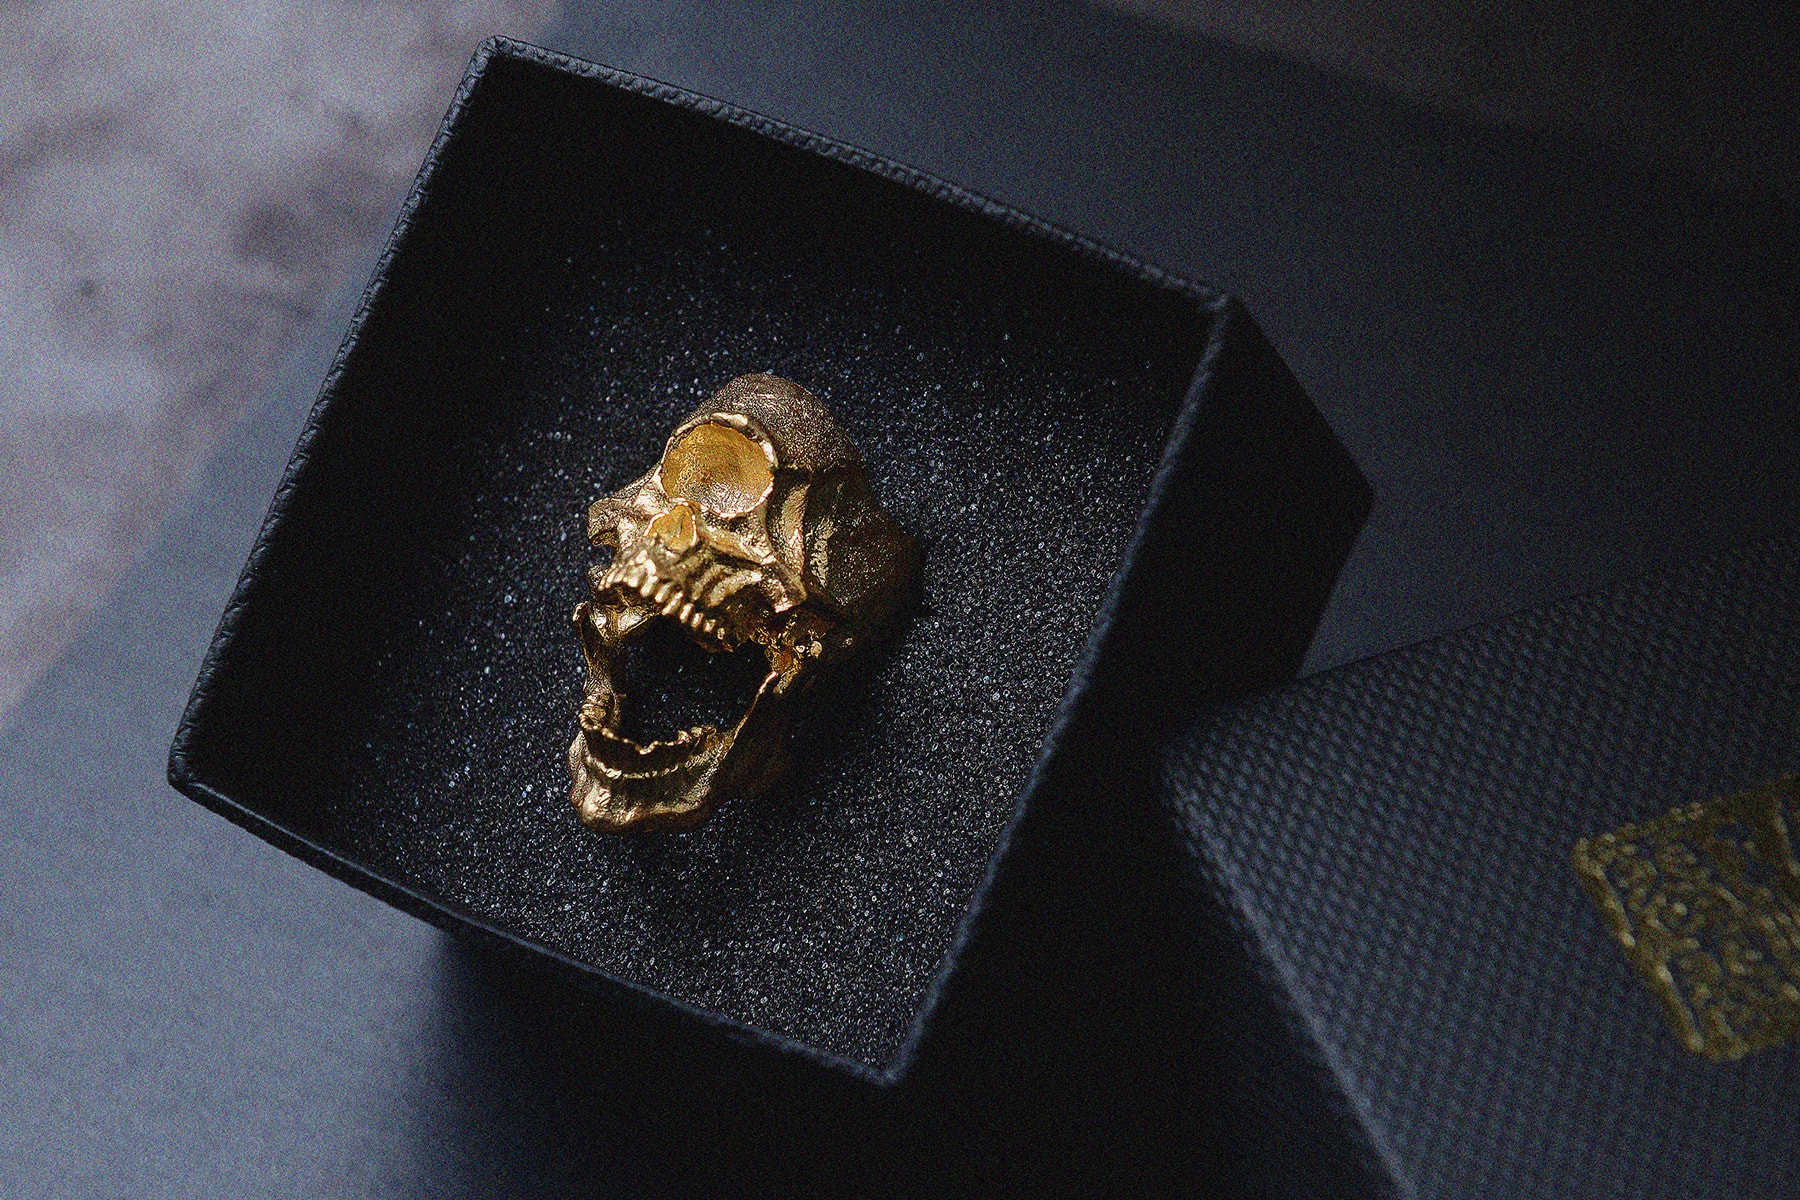 玖零零原型工作室 900 Sculptor Studio 推出全新獨眼骷髏戒指系列